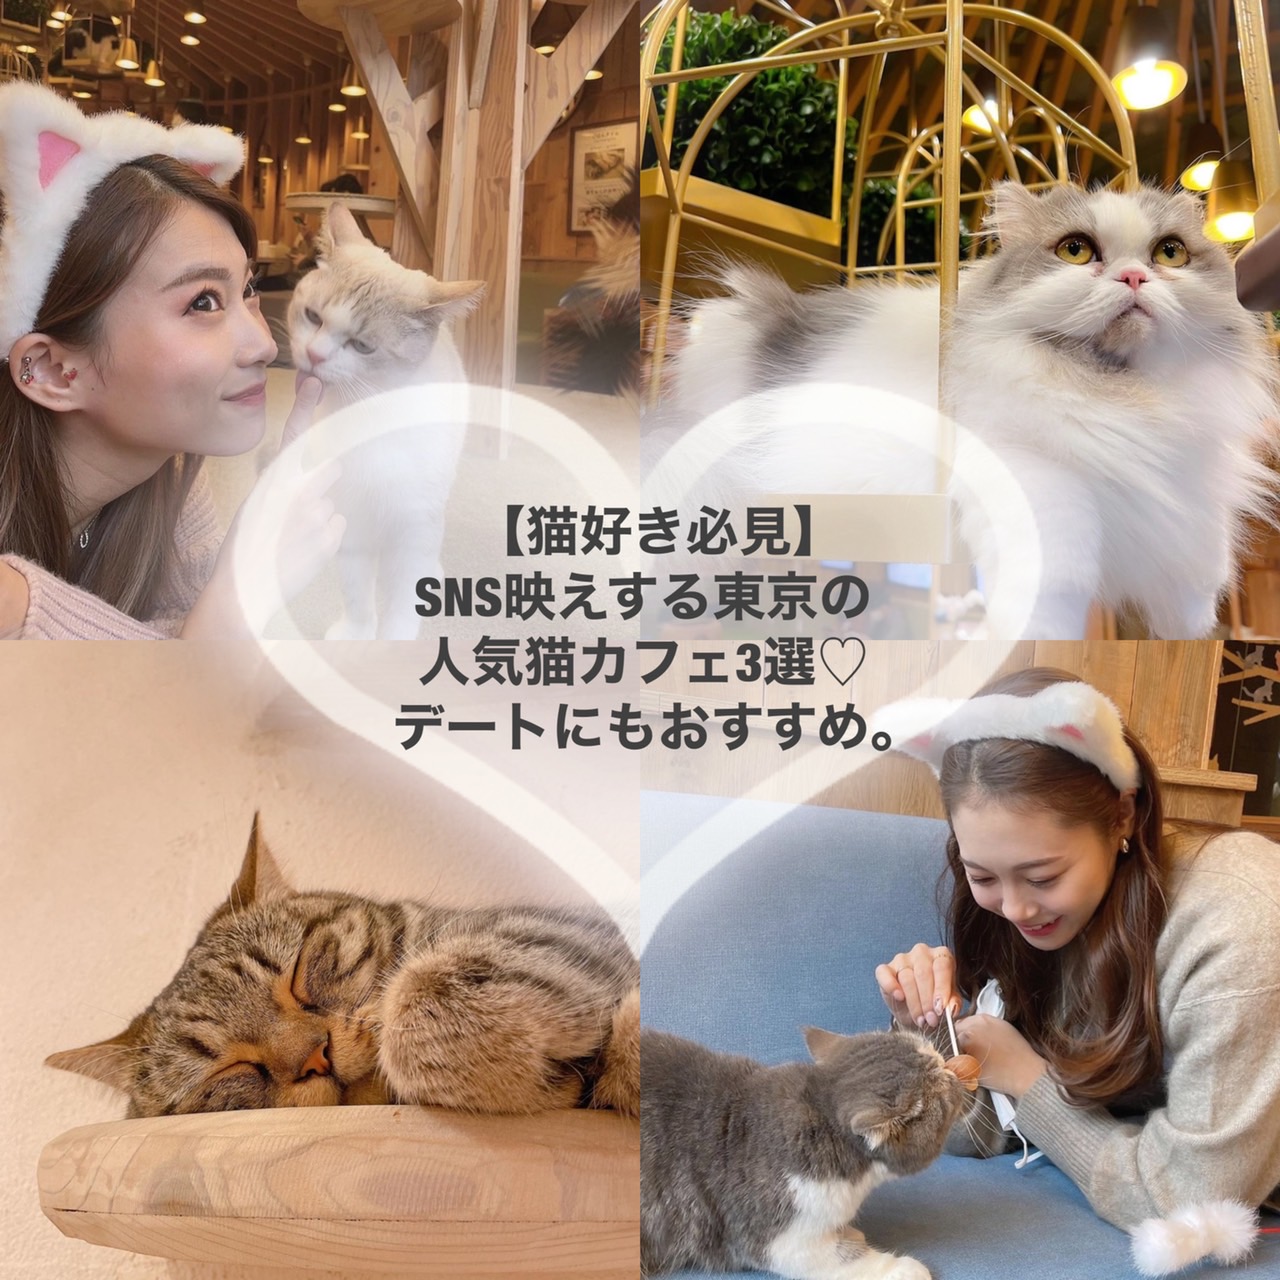 猫好き必見 Sns映えする東京の人気猫カフェ3選 デートにもおすすめ トレンドお届けメディア Trepo トレポ